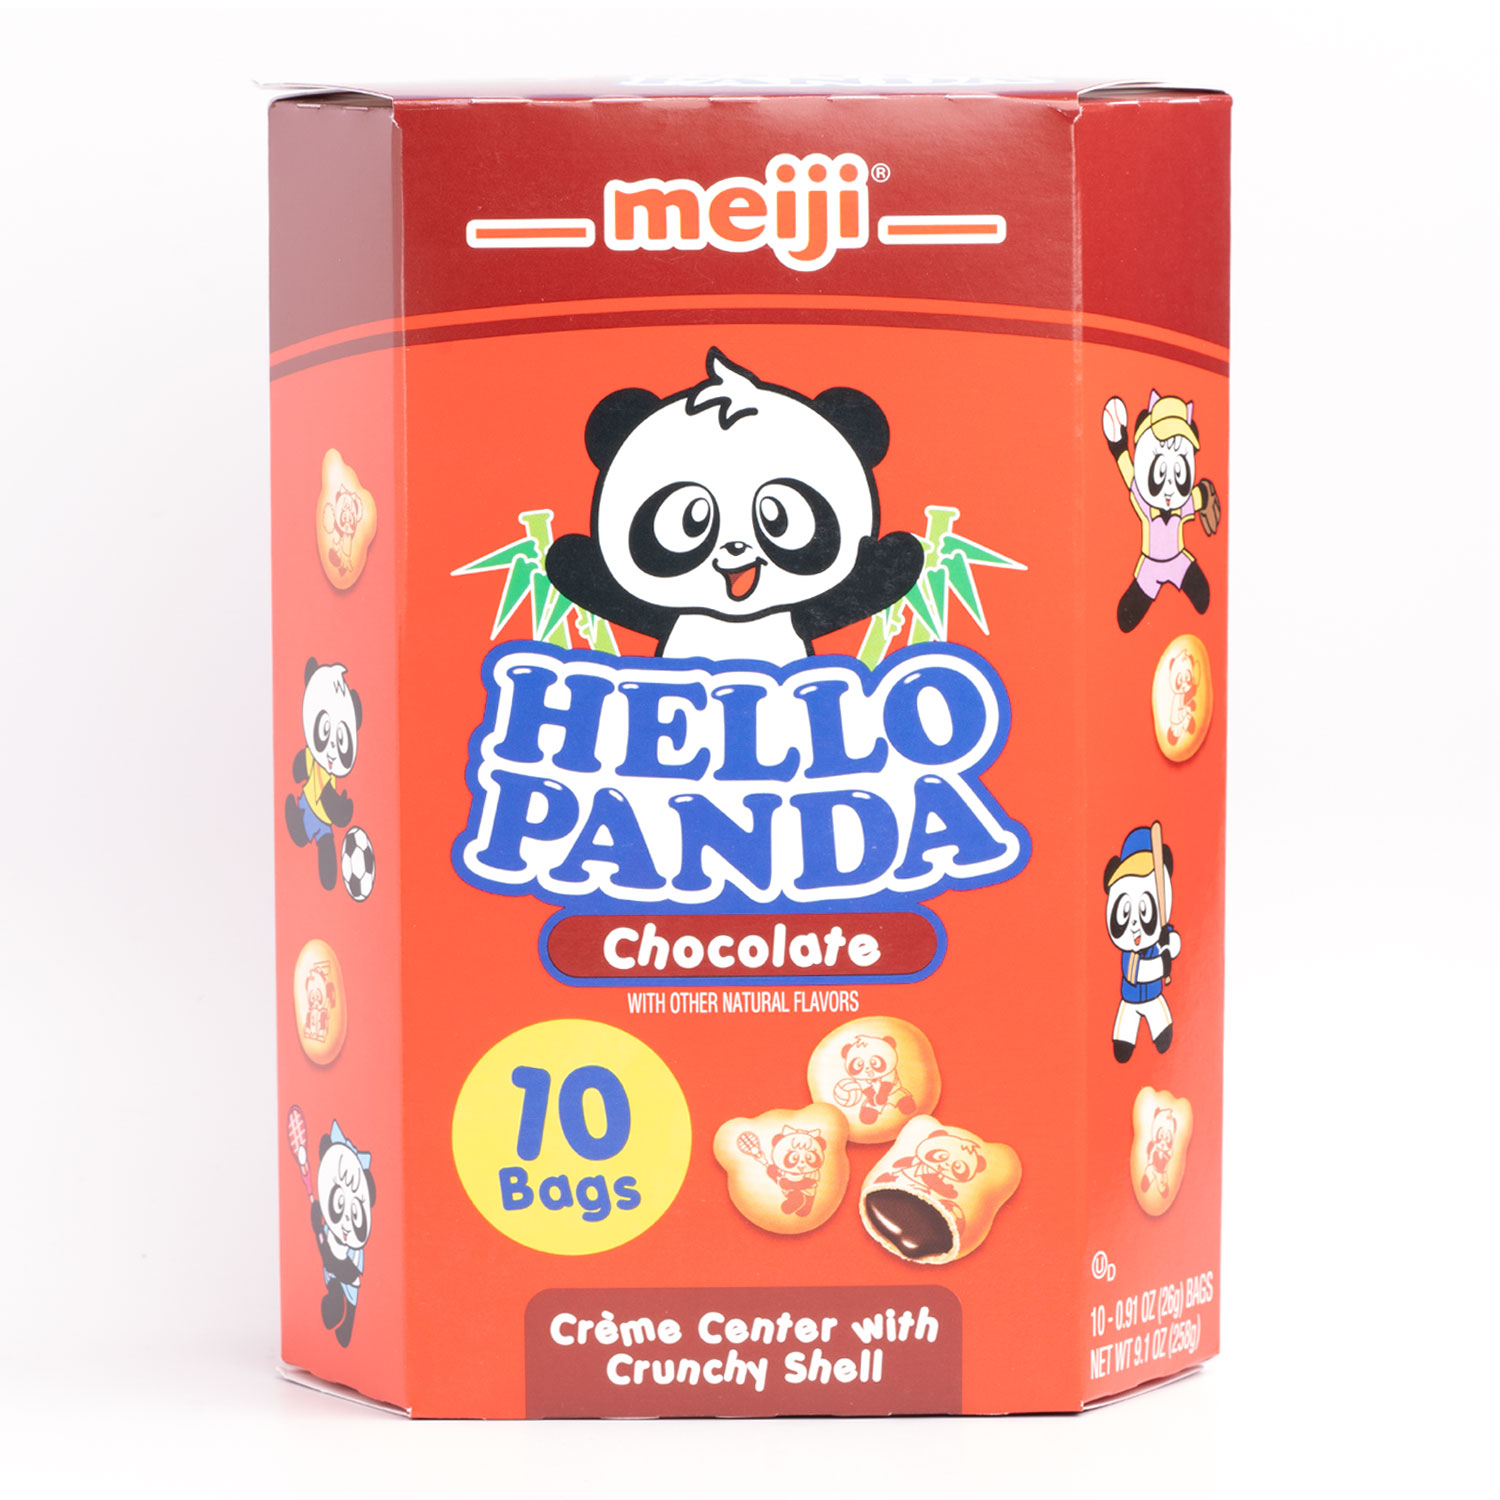 Hello Panda chocolate